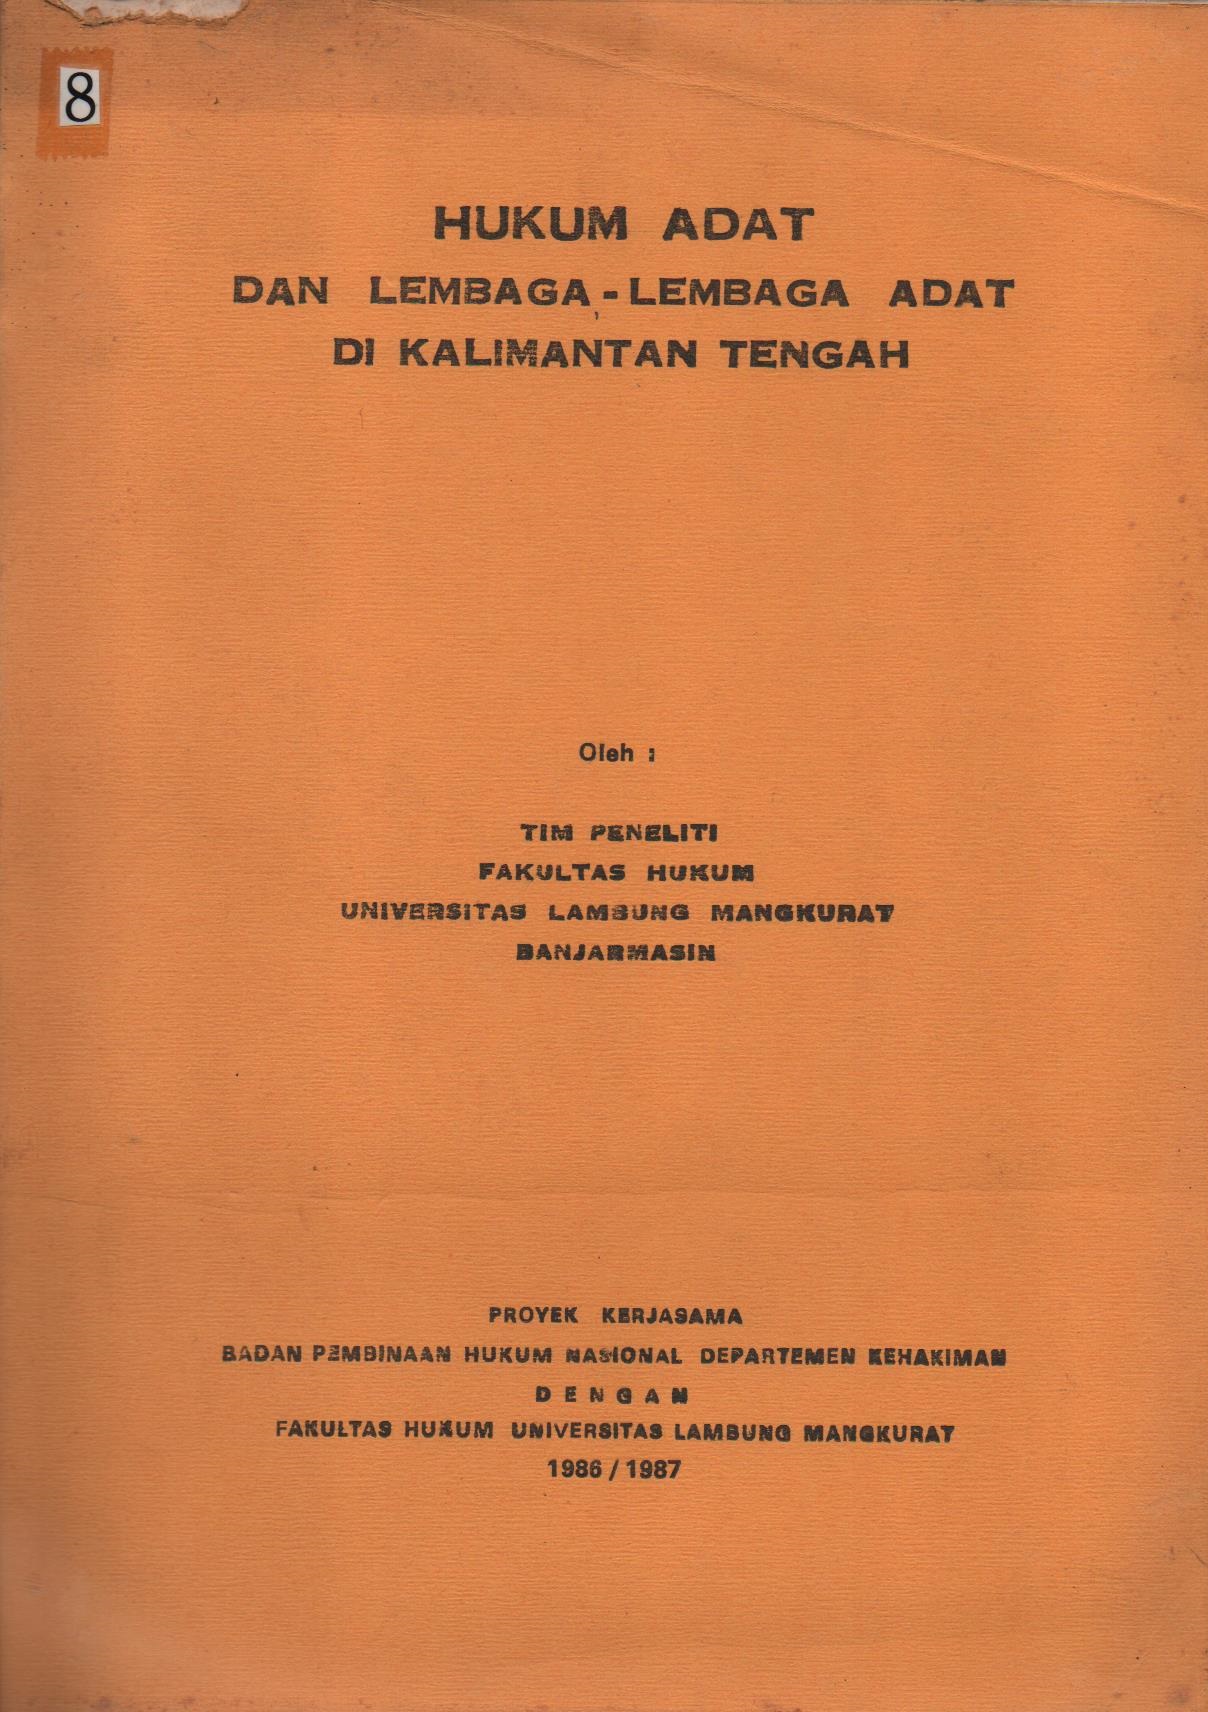 Hukum Adat Dan Lembaga - Lembaga Adat Di Kalimantan Selatan